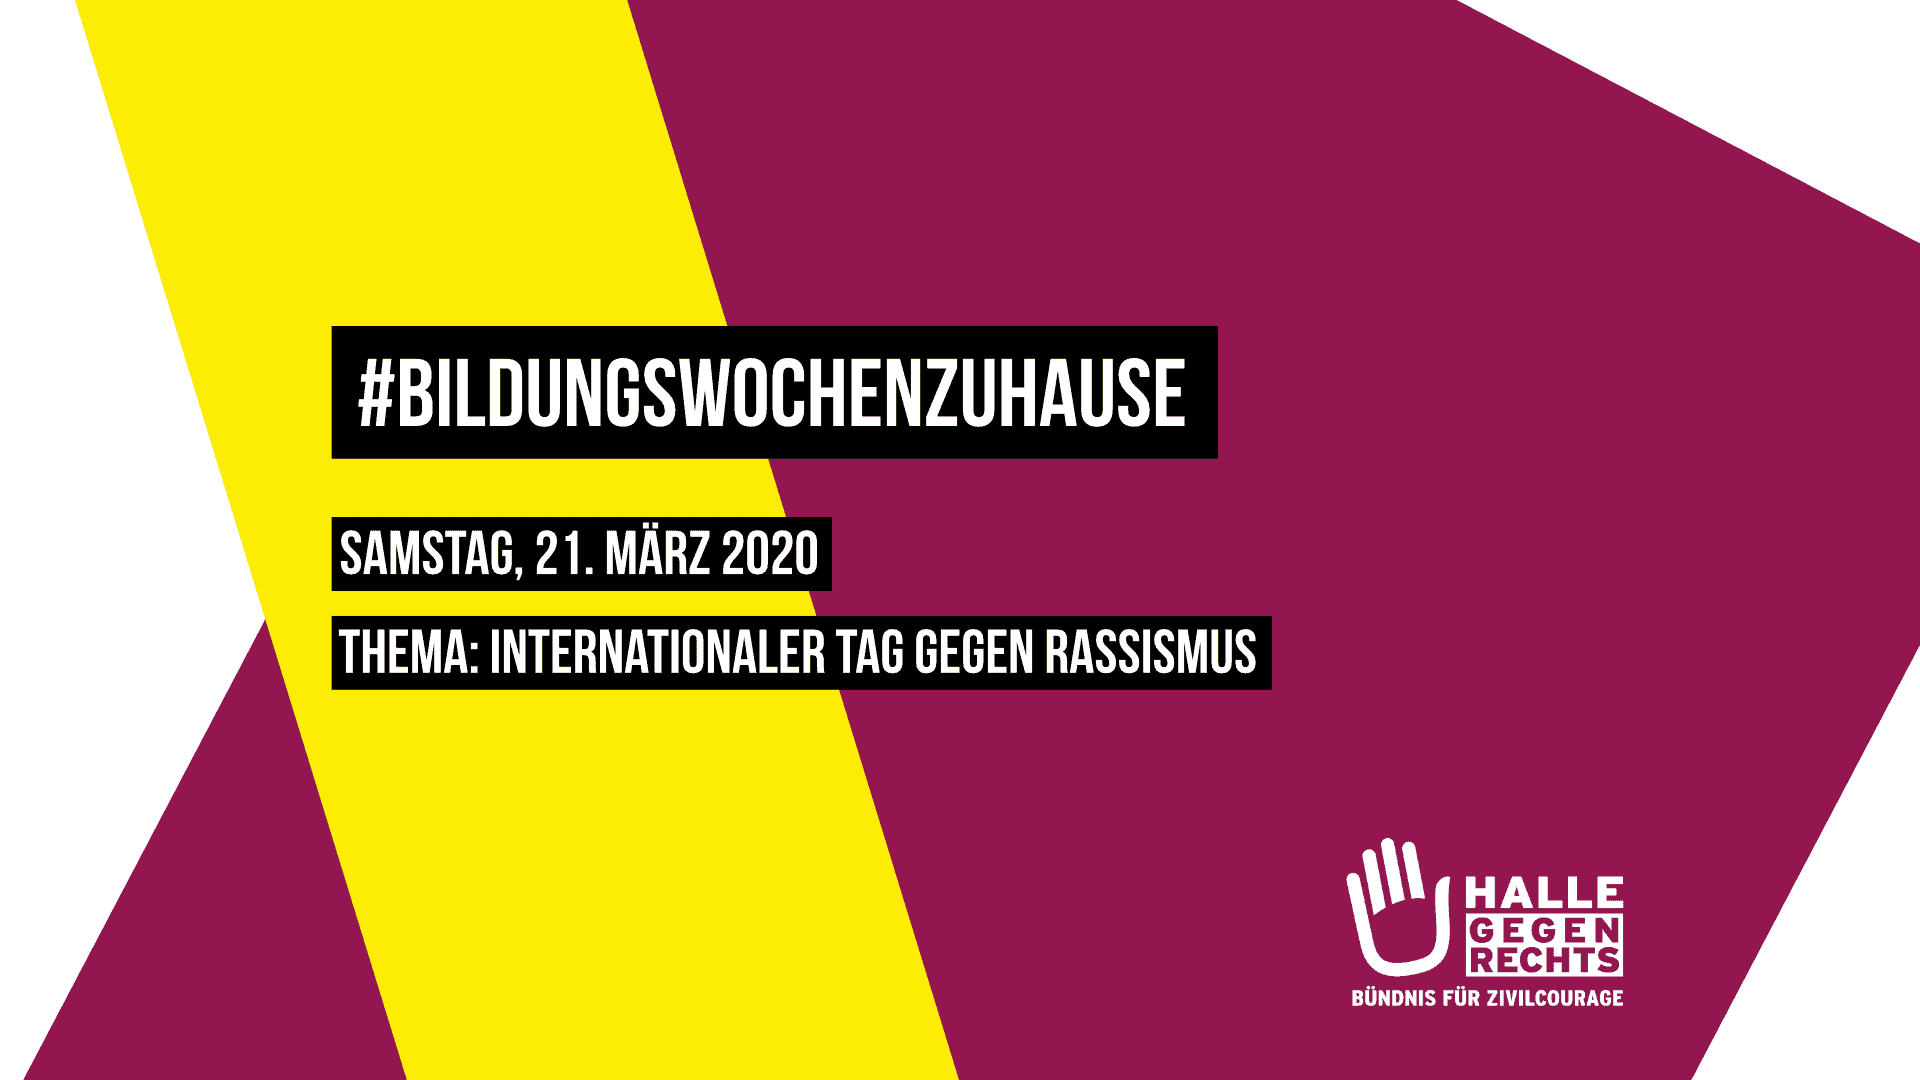 BildungswochenzuHause Samstag, 21. März 2020 Thema: Internationaler Tag gegen Rassismus, Logo von Halle gegen Rechts, Hintergrund beerenfarben und gelb